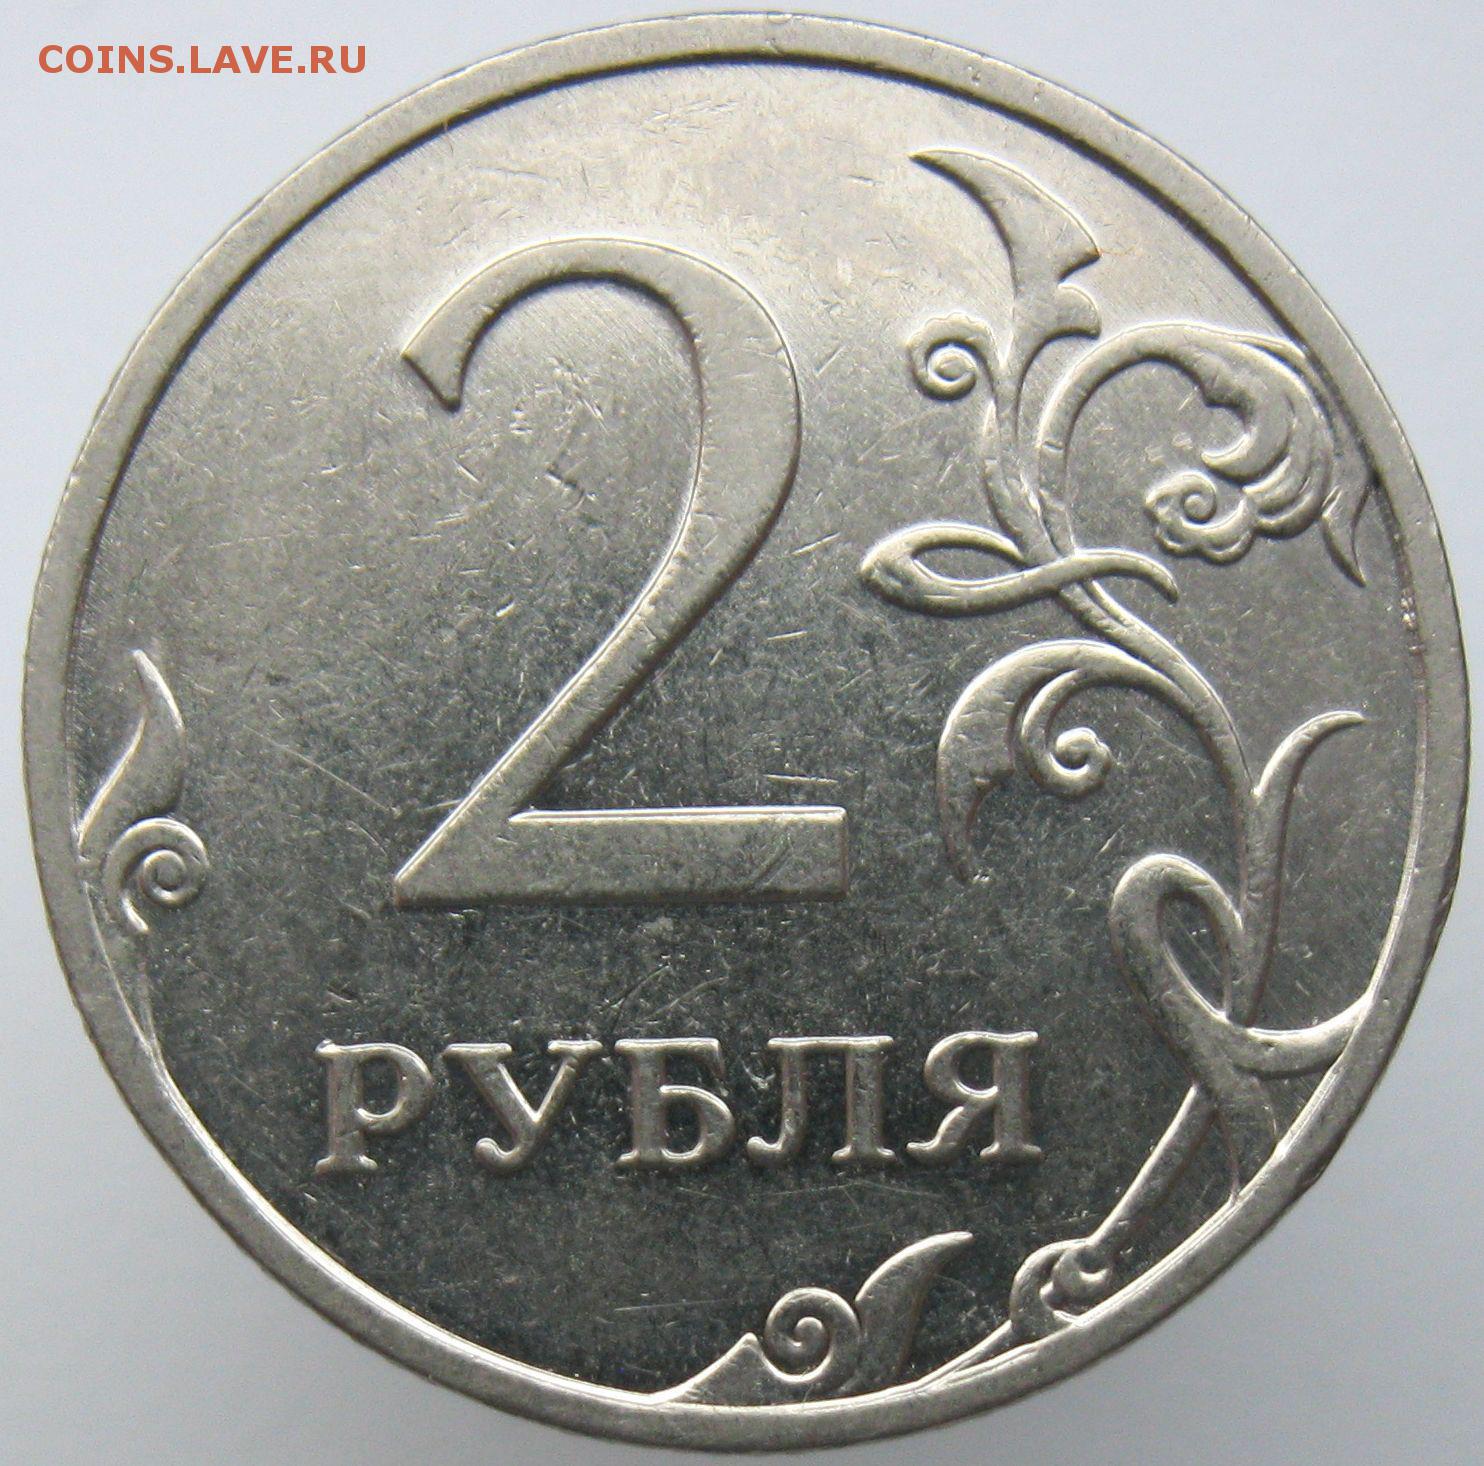 14 монет 2 и 5 рублей. Советские 2 рубля. Монета 2 рубля с браком. Аверс 2 рубля. Монета с браком 2 рубля 20 года.